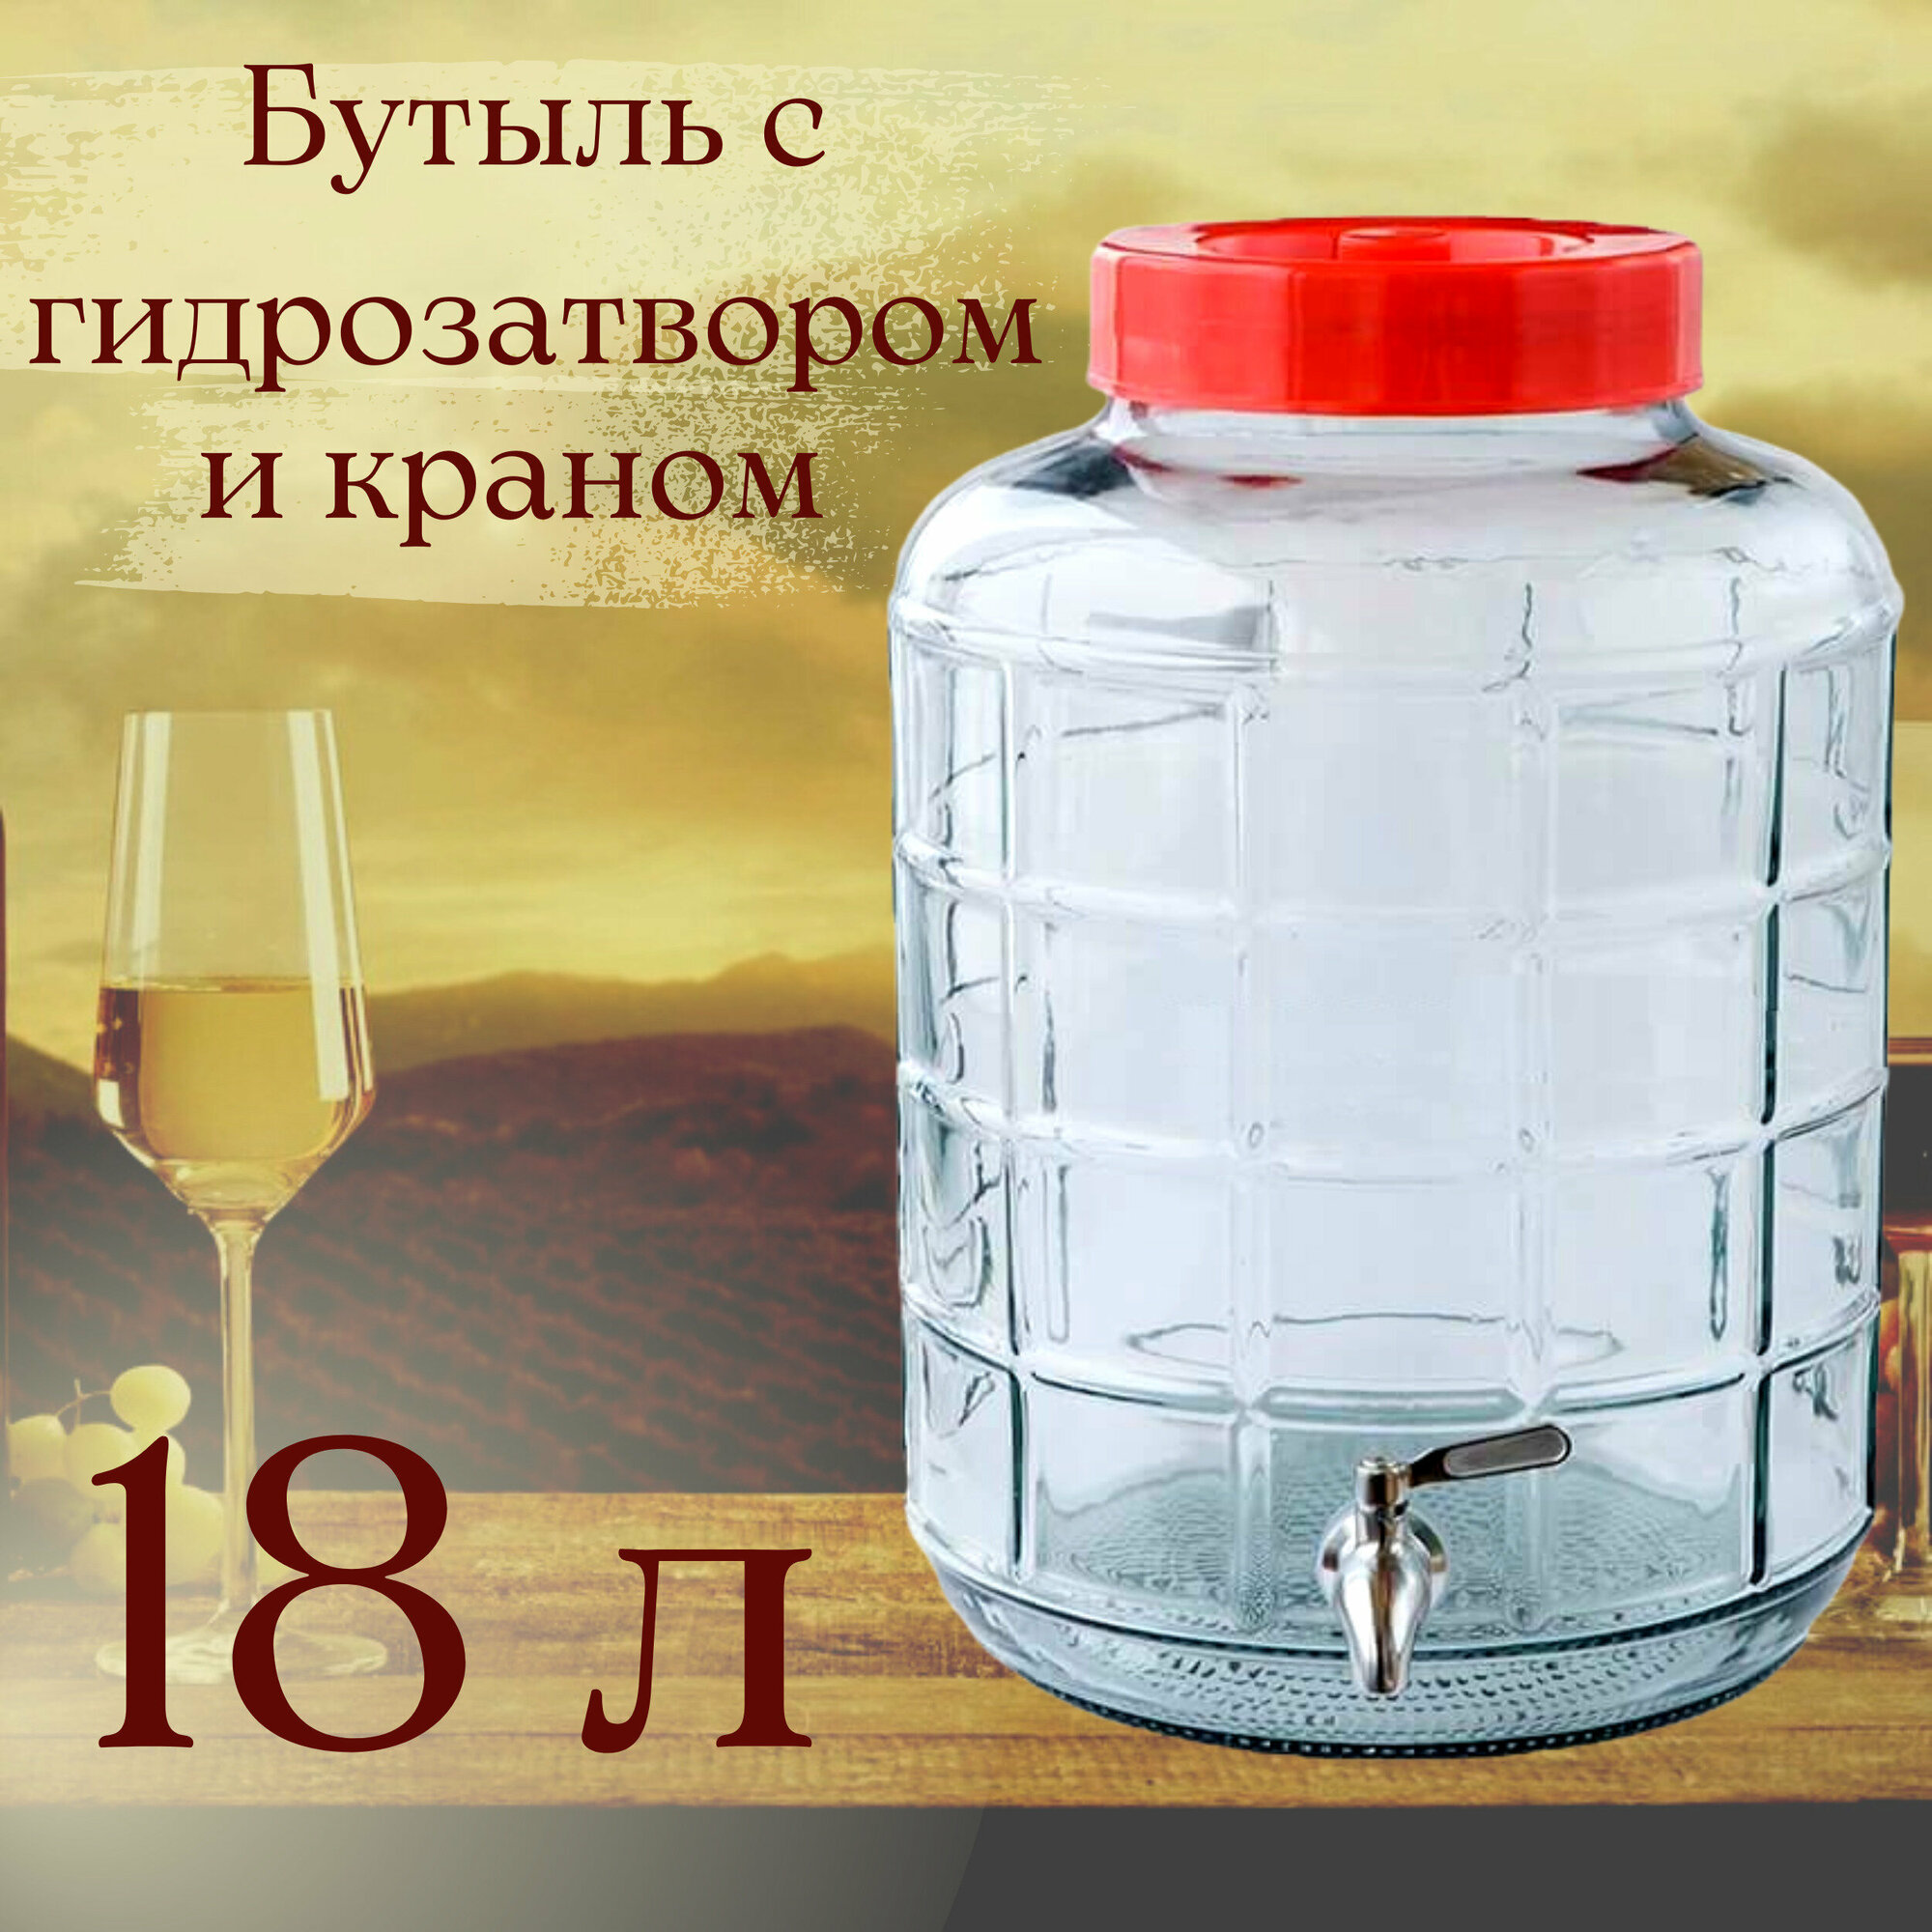 Бутыль (емкость банка) стеклянная для браги вина 18 л с крышкой-гидрозатвором и краном